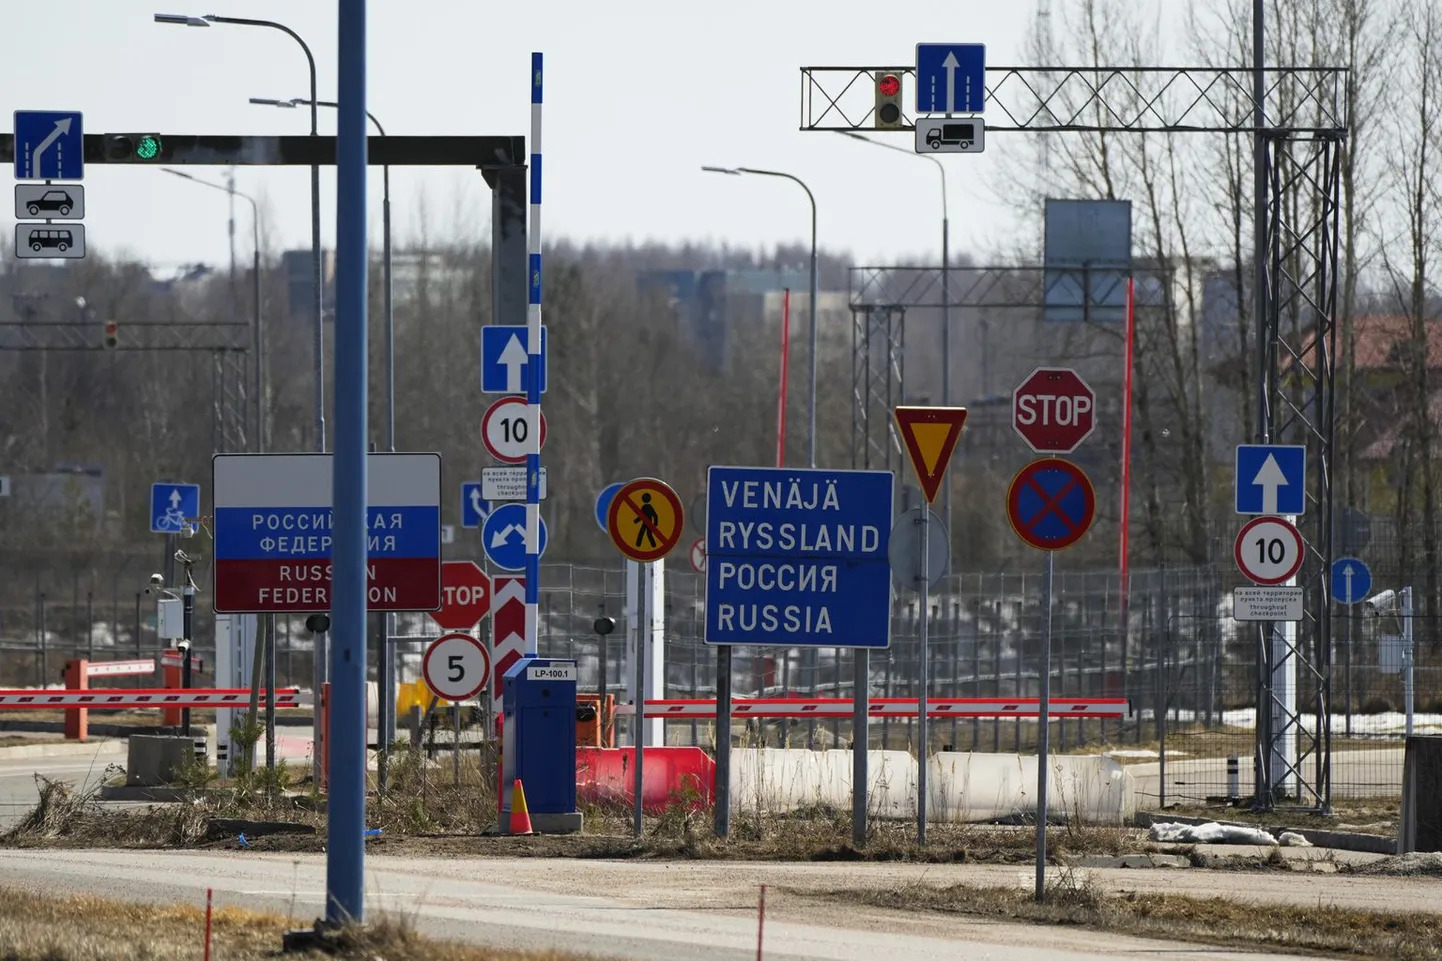 КПП на финско-российской границе в Пелкола.